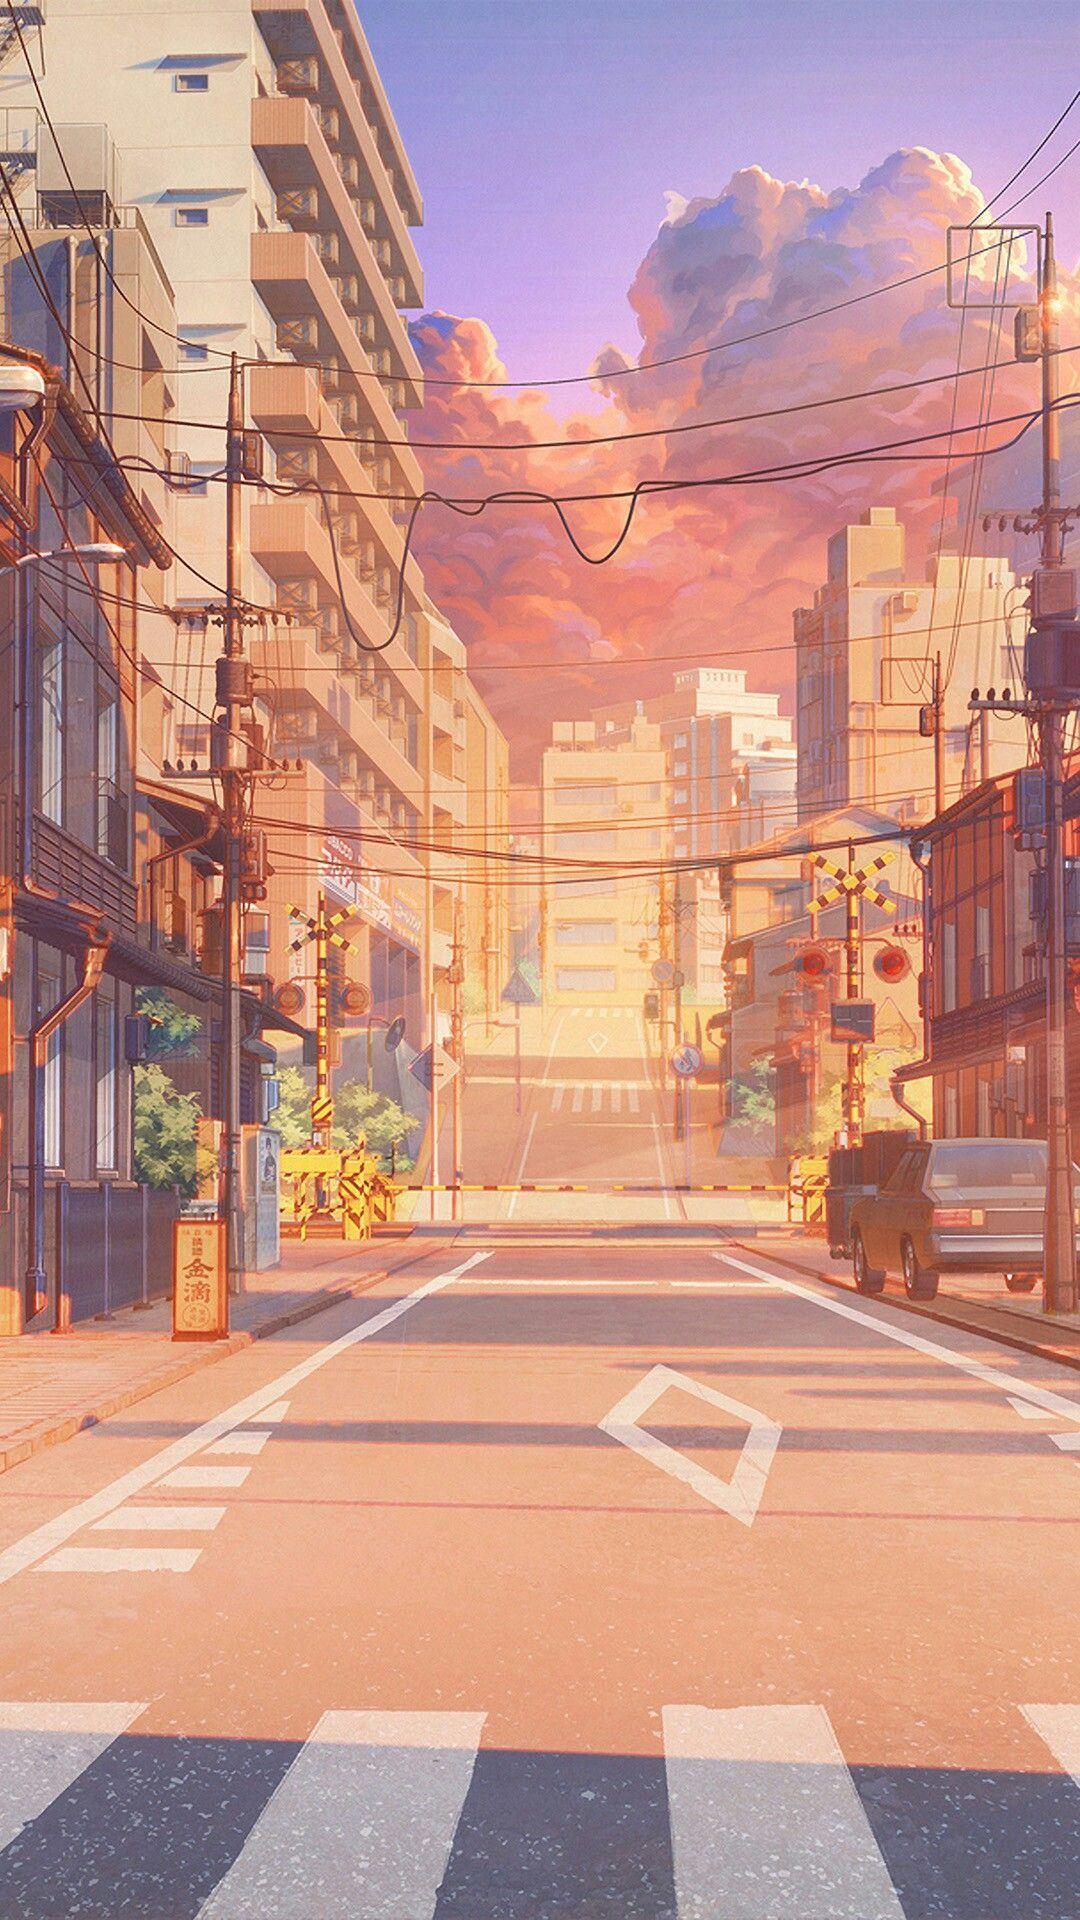 Anime sunset street illustration wallpaper